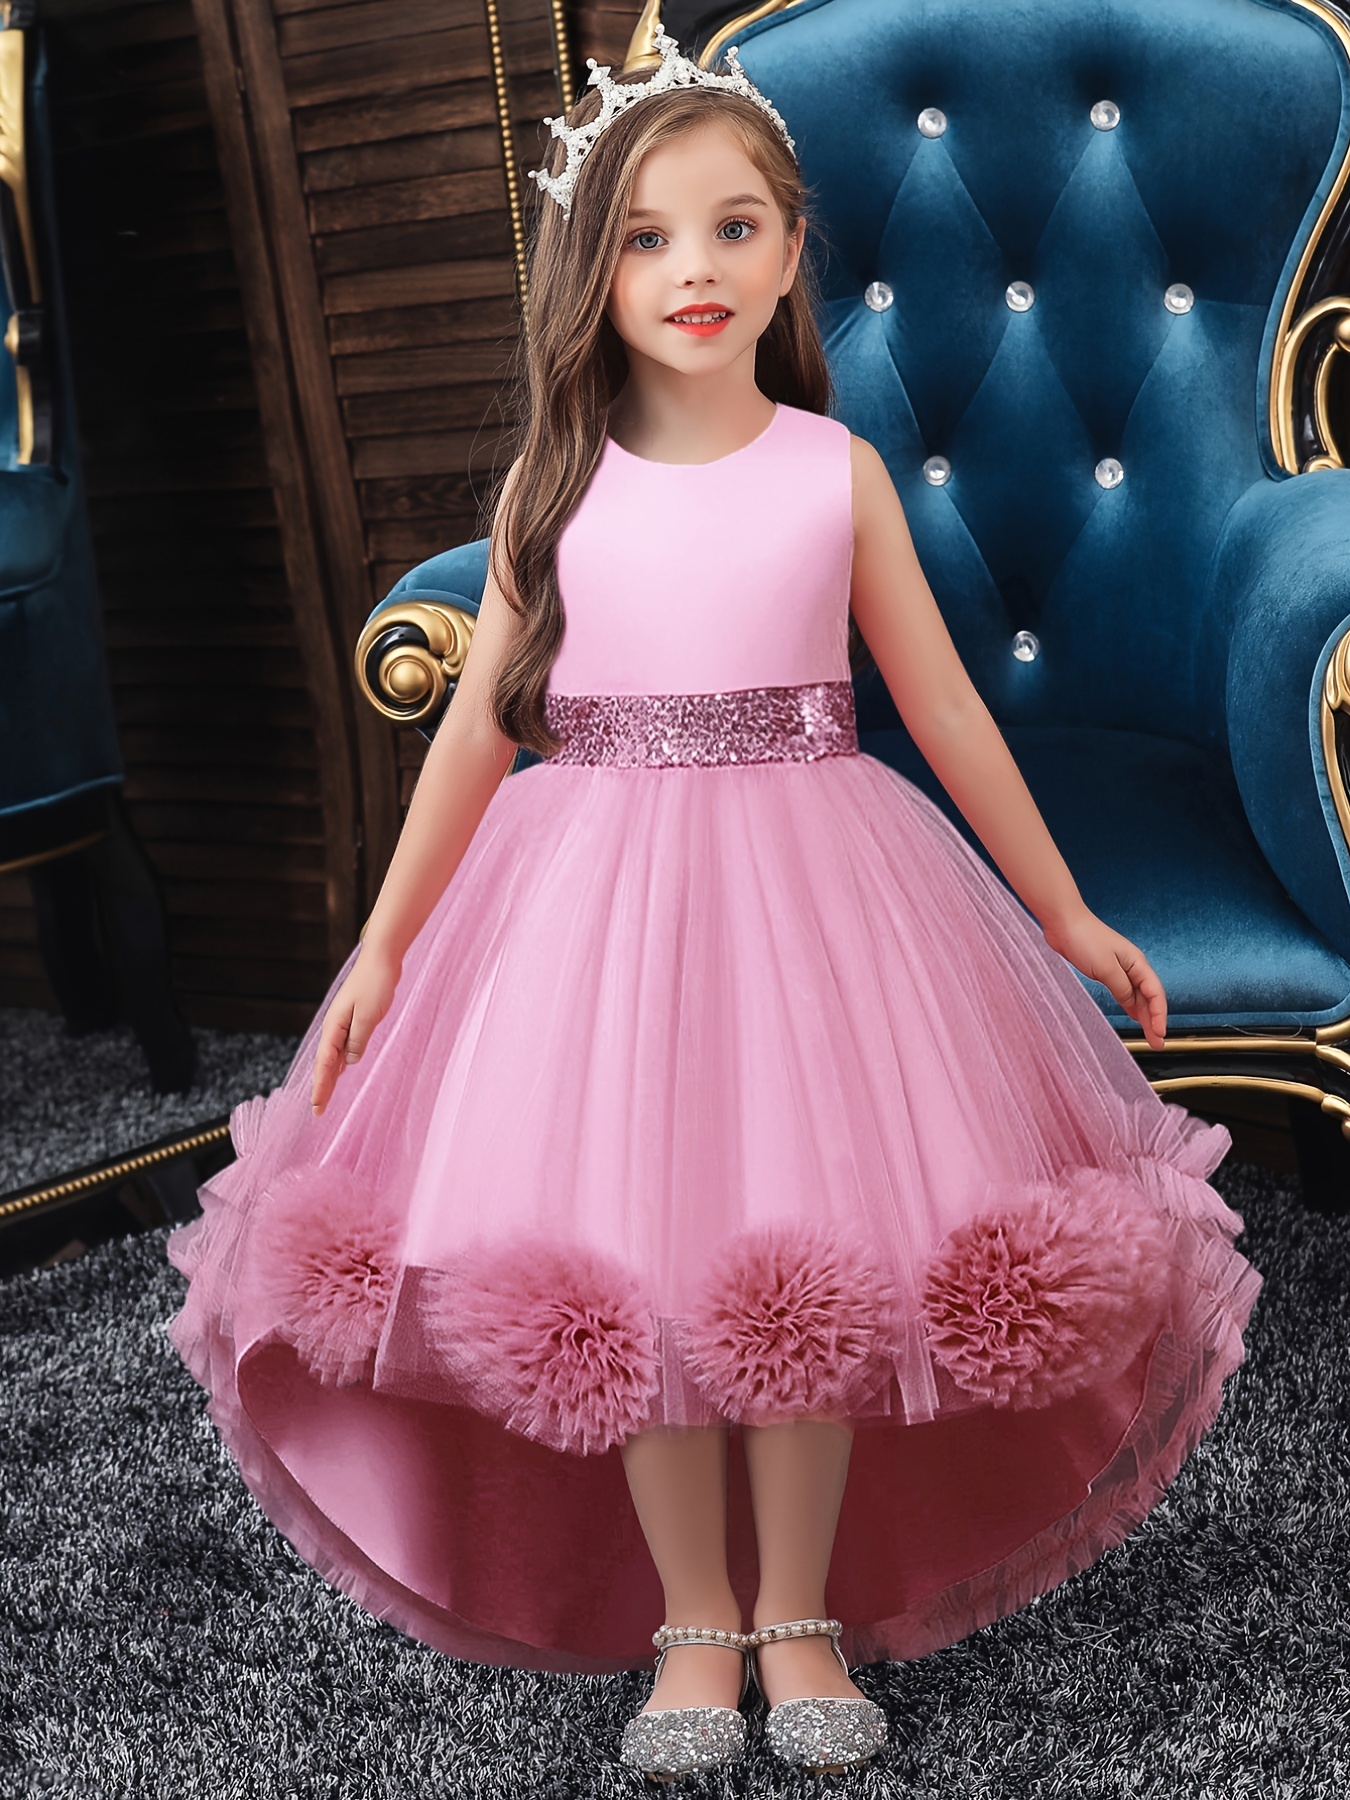 17 Most Beautiful Chiffon Dresses for Little Girls - Creative Fashion Kids